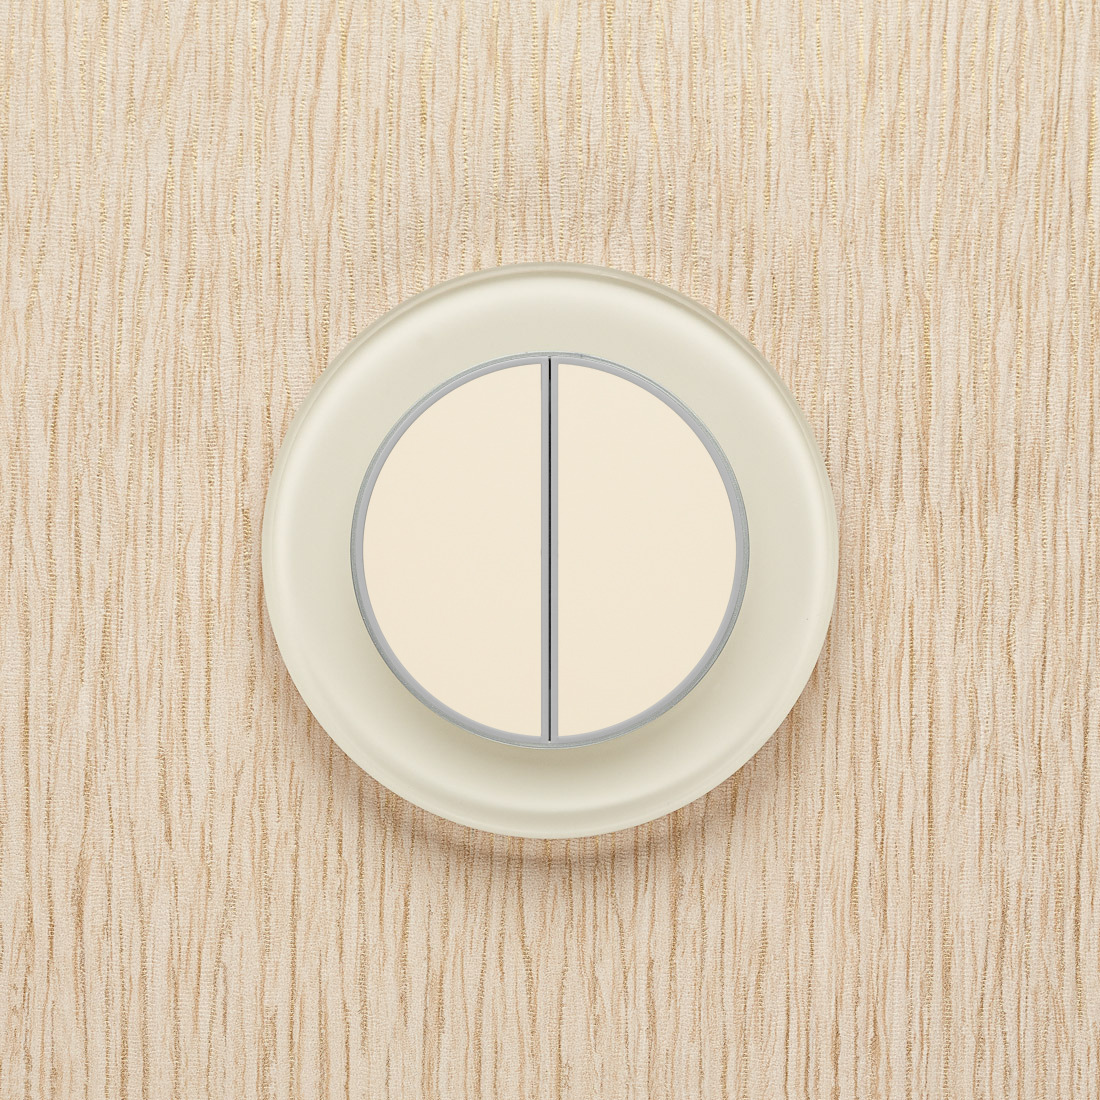 выключатель круглый врезной кнопочный d 14 4 мм белый